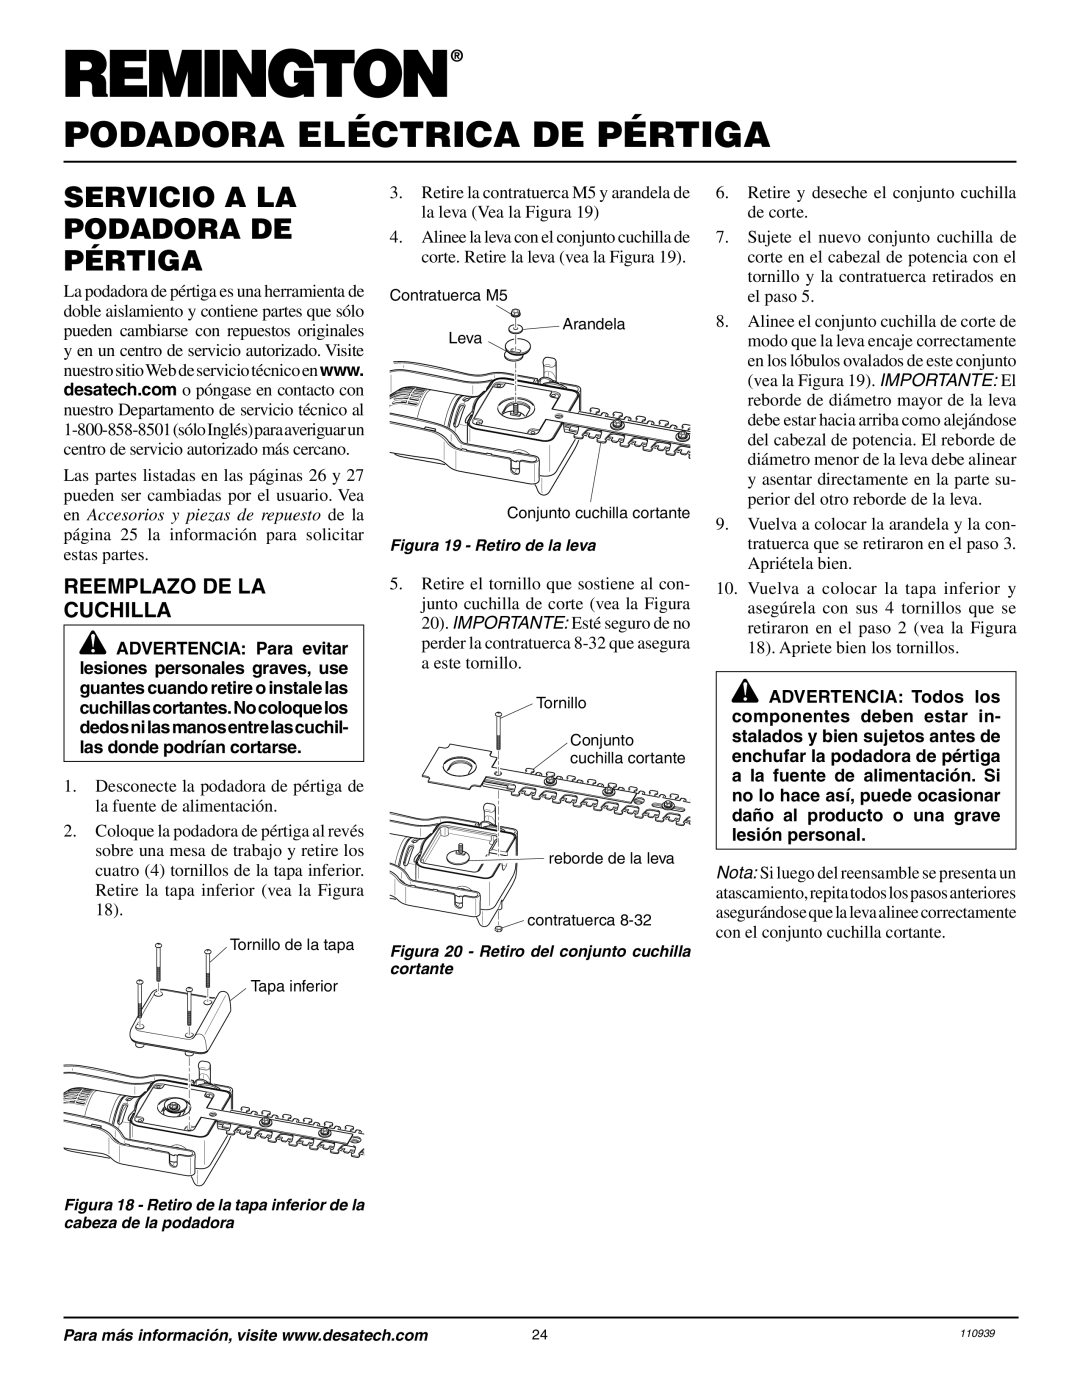 Remington Power Tools 117535-01A owner manual Servicio A La Podadora De Pértiga, Reemplazo De La Cuchilla 